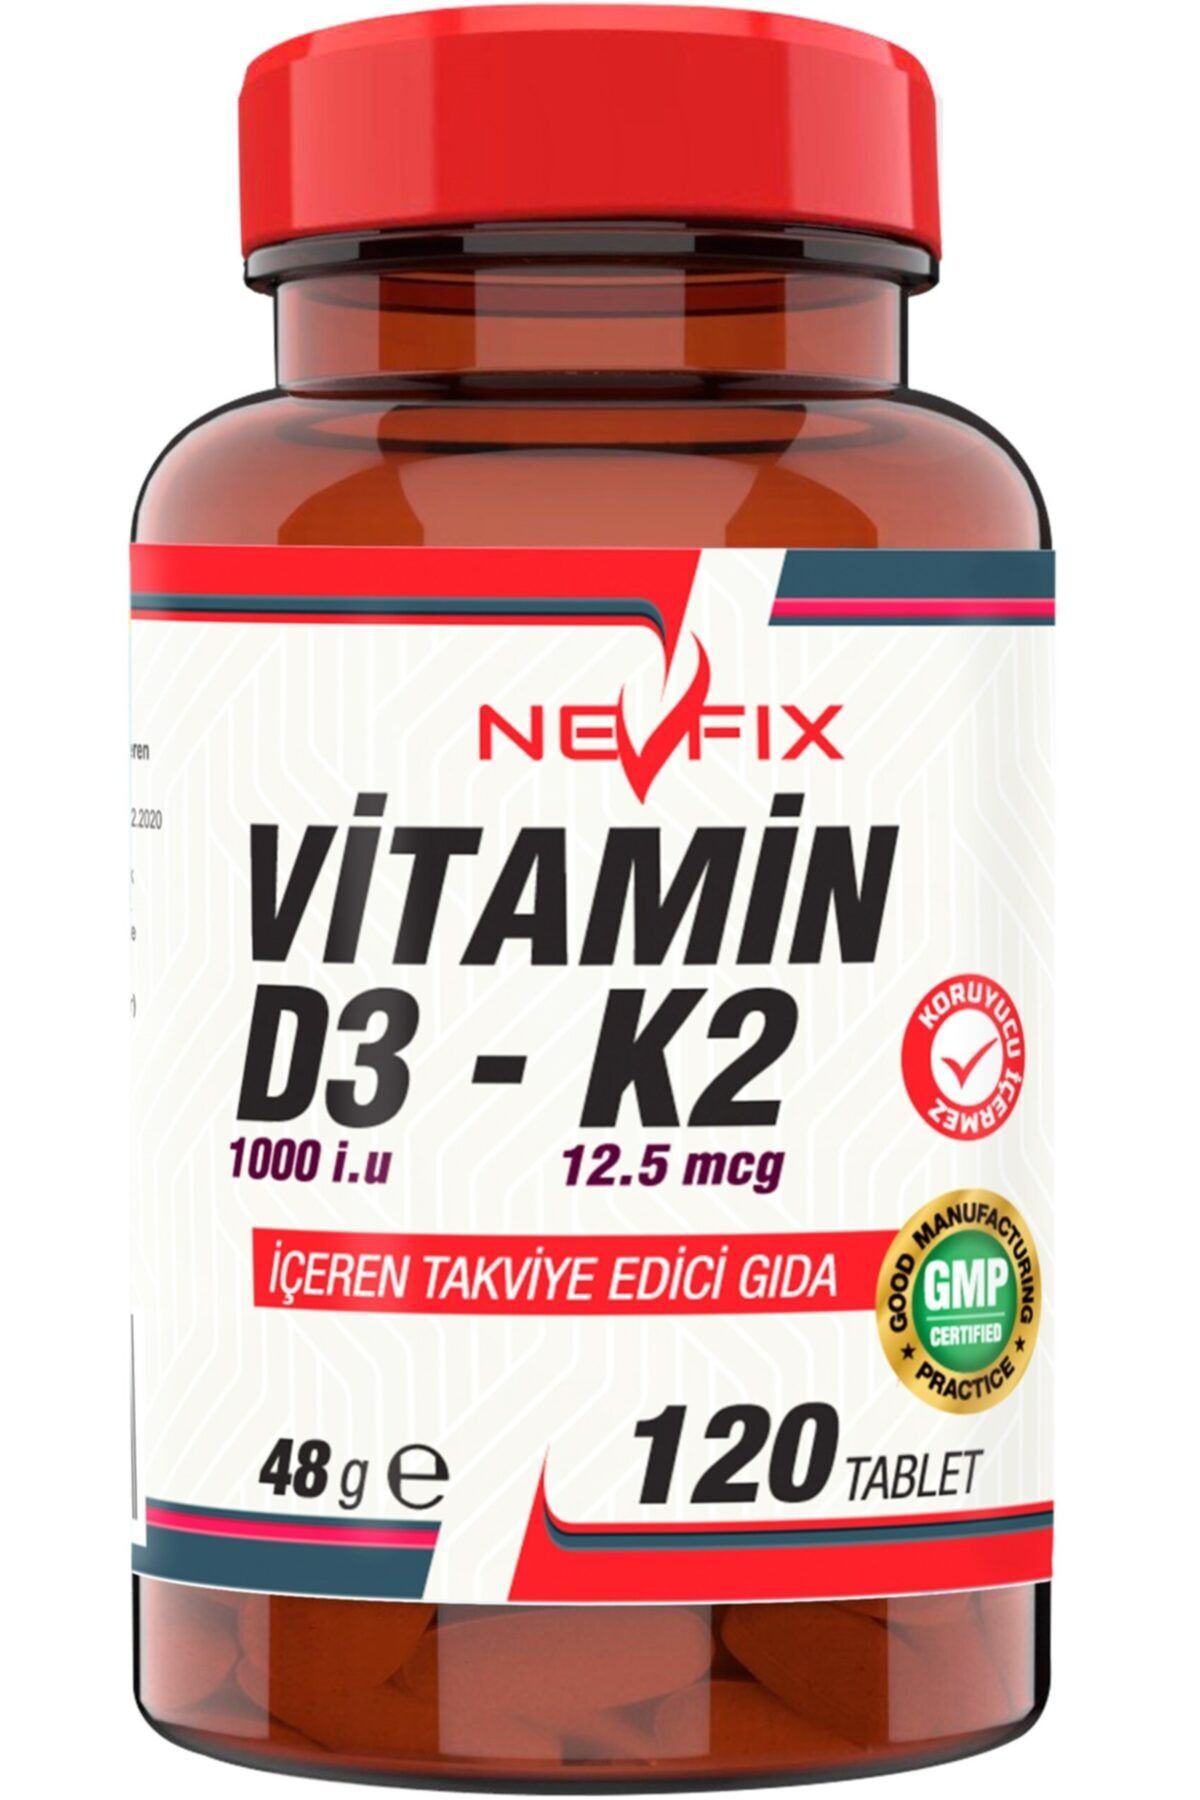 Nevfix Vitamin D3 K2 120 Tablet D3 1000 Iu K2 12.5 Mcg